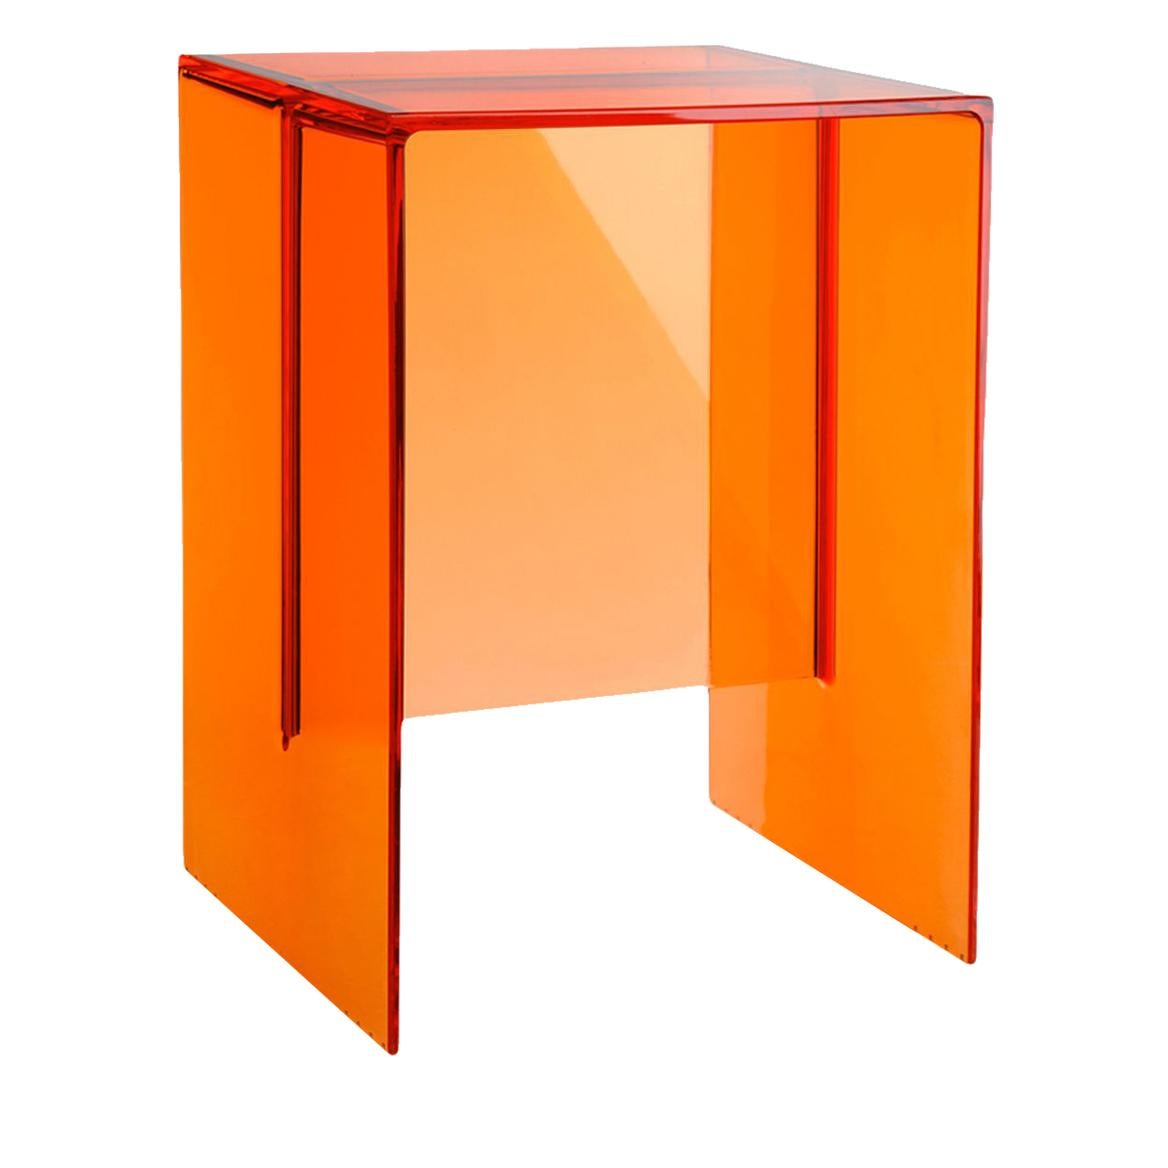 Table d'appoint Kartell Max-Beam en orange rouille de Ludovica et Roberto Palomba